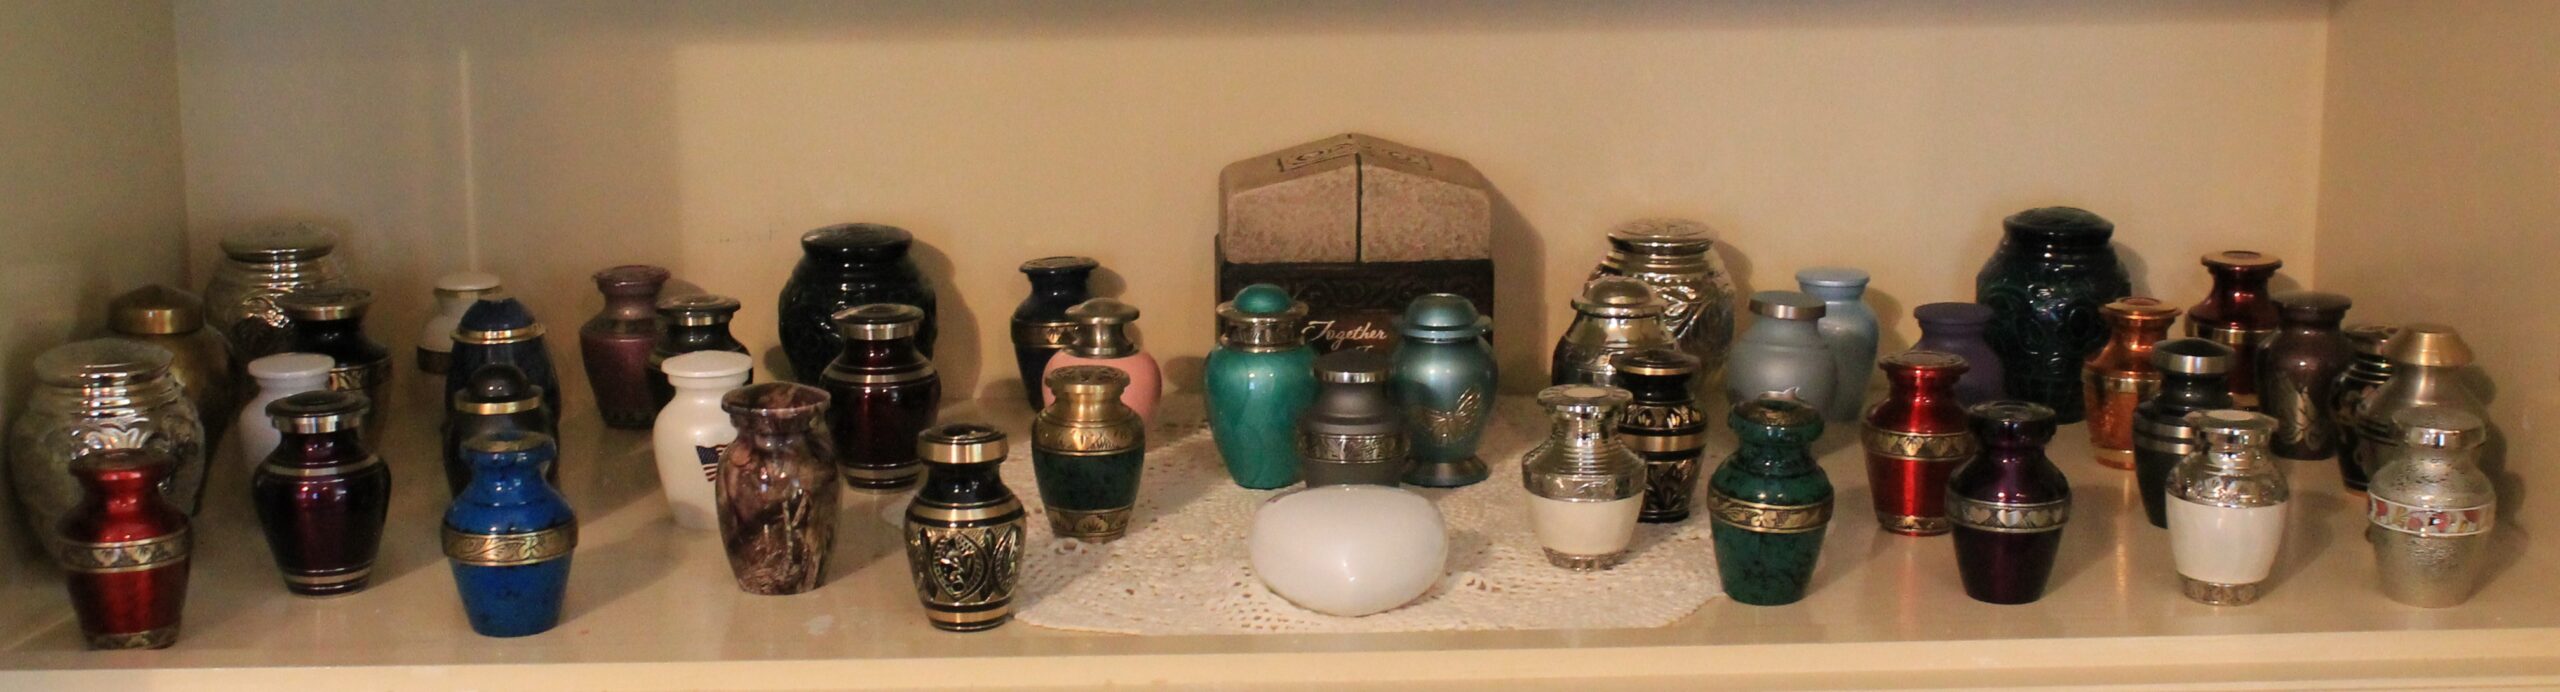 urns